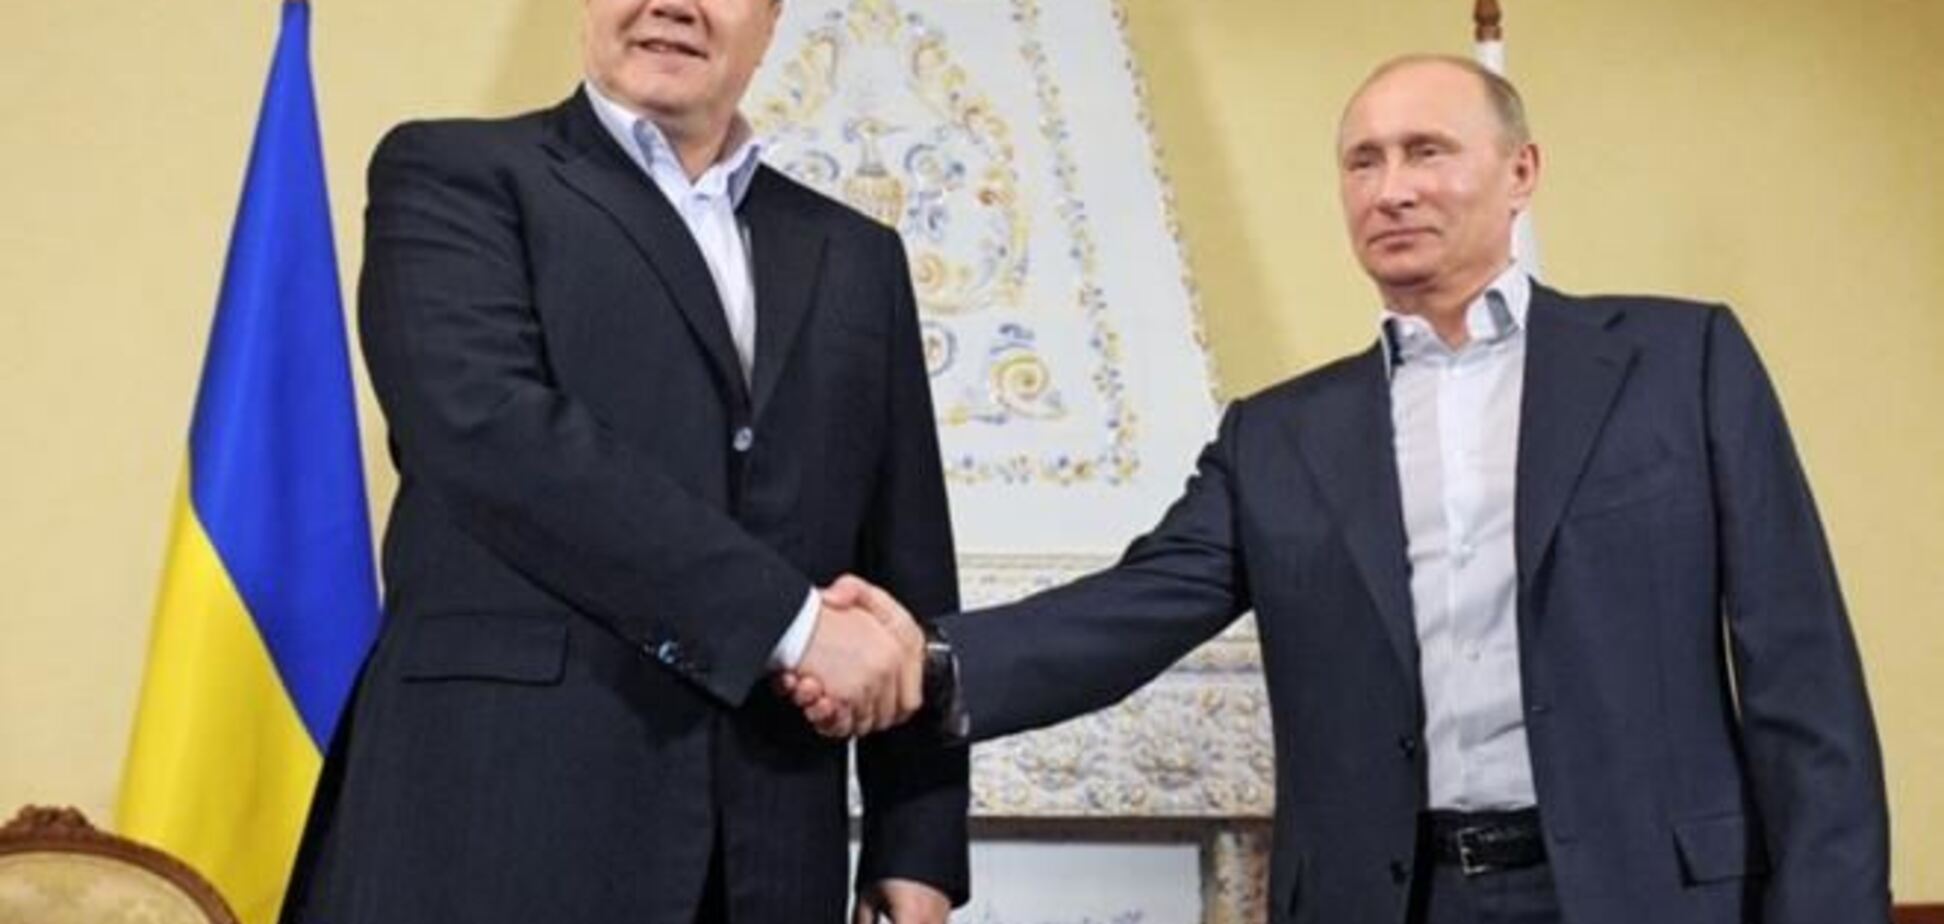 ЗМІ: Янукович міг домовитися з Путіним в Сочі про $ 2 млрд кредиту